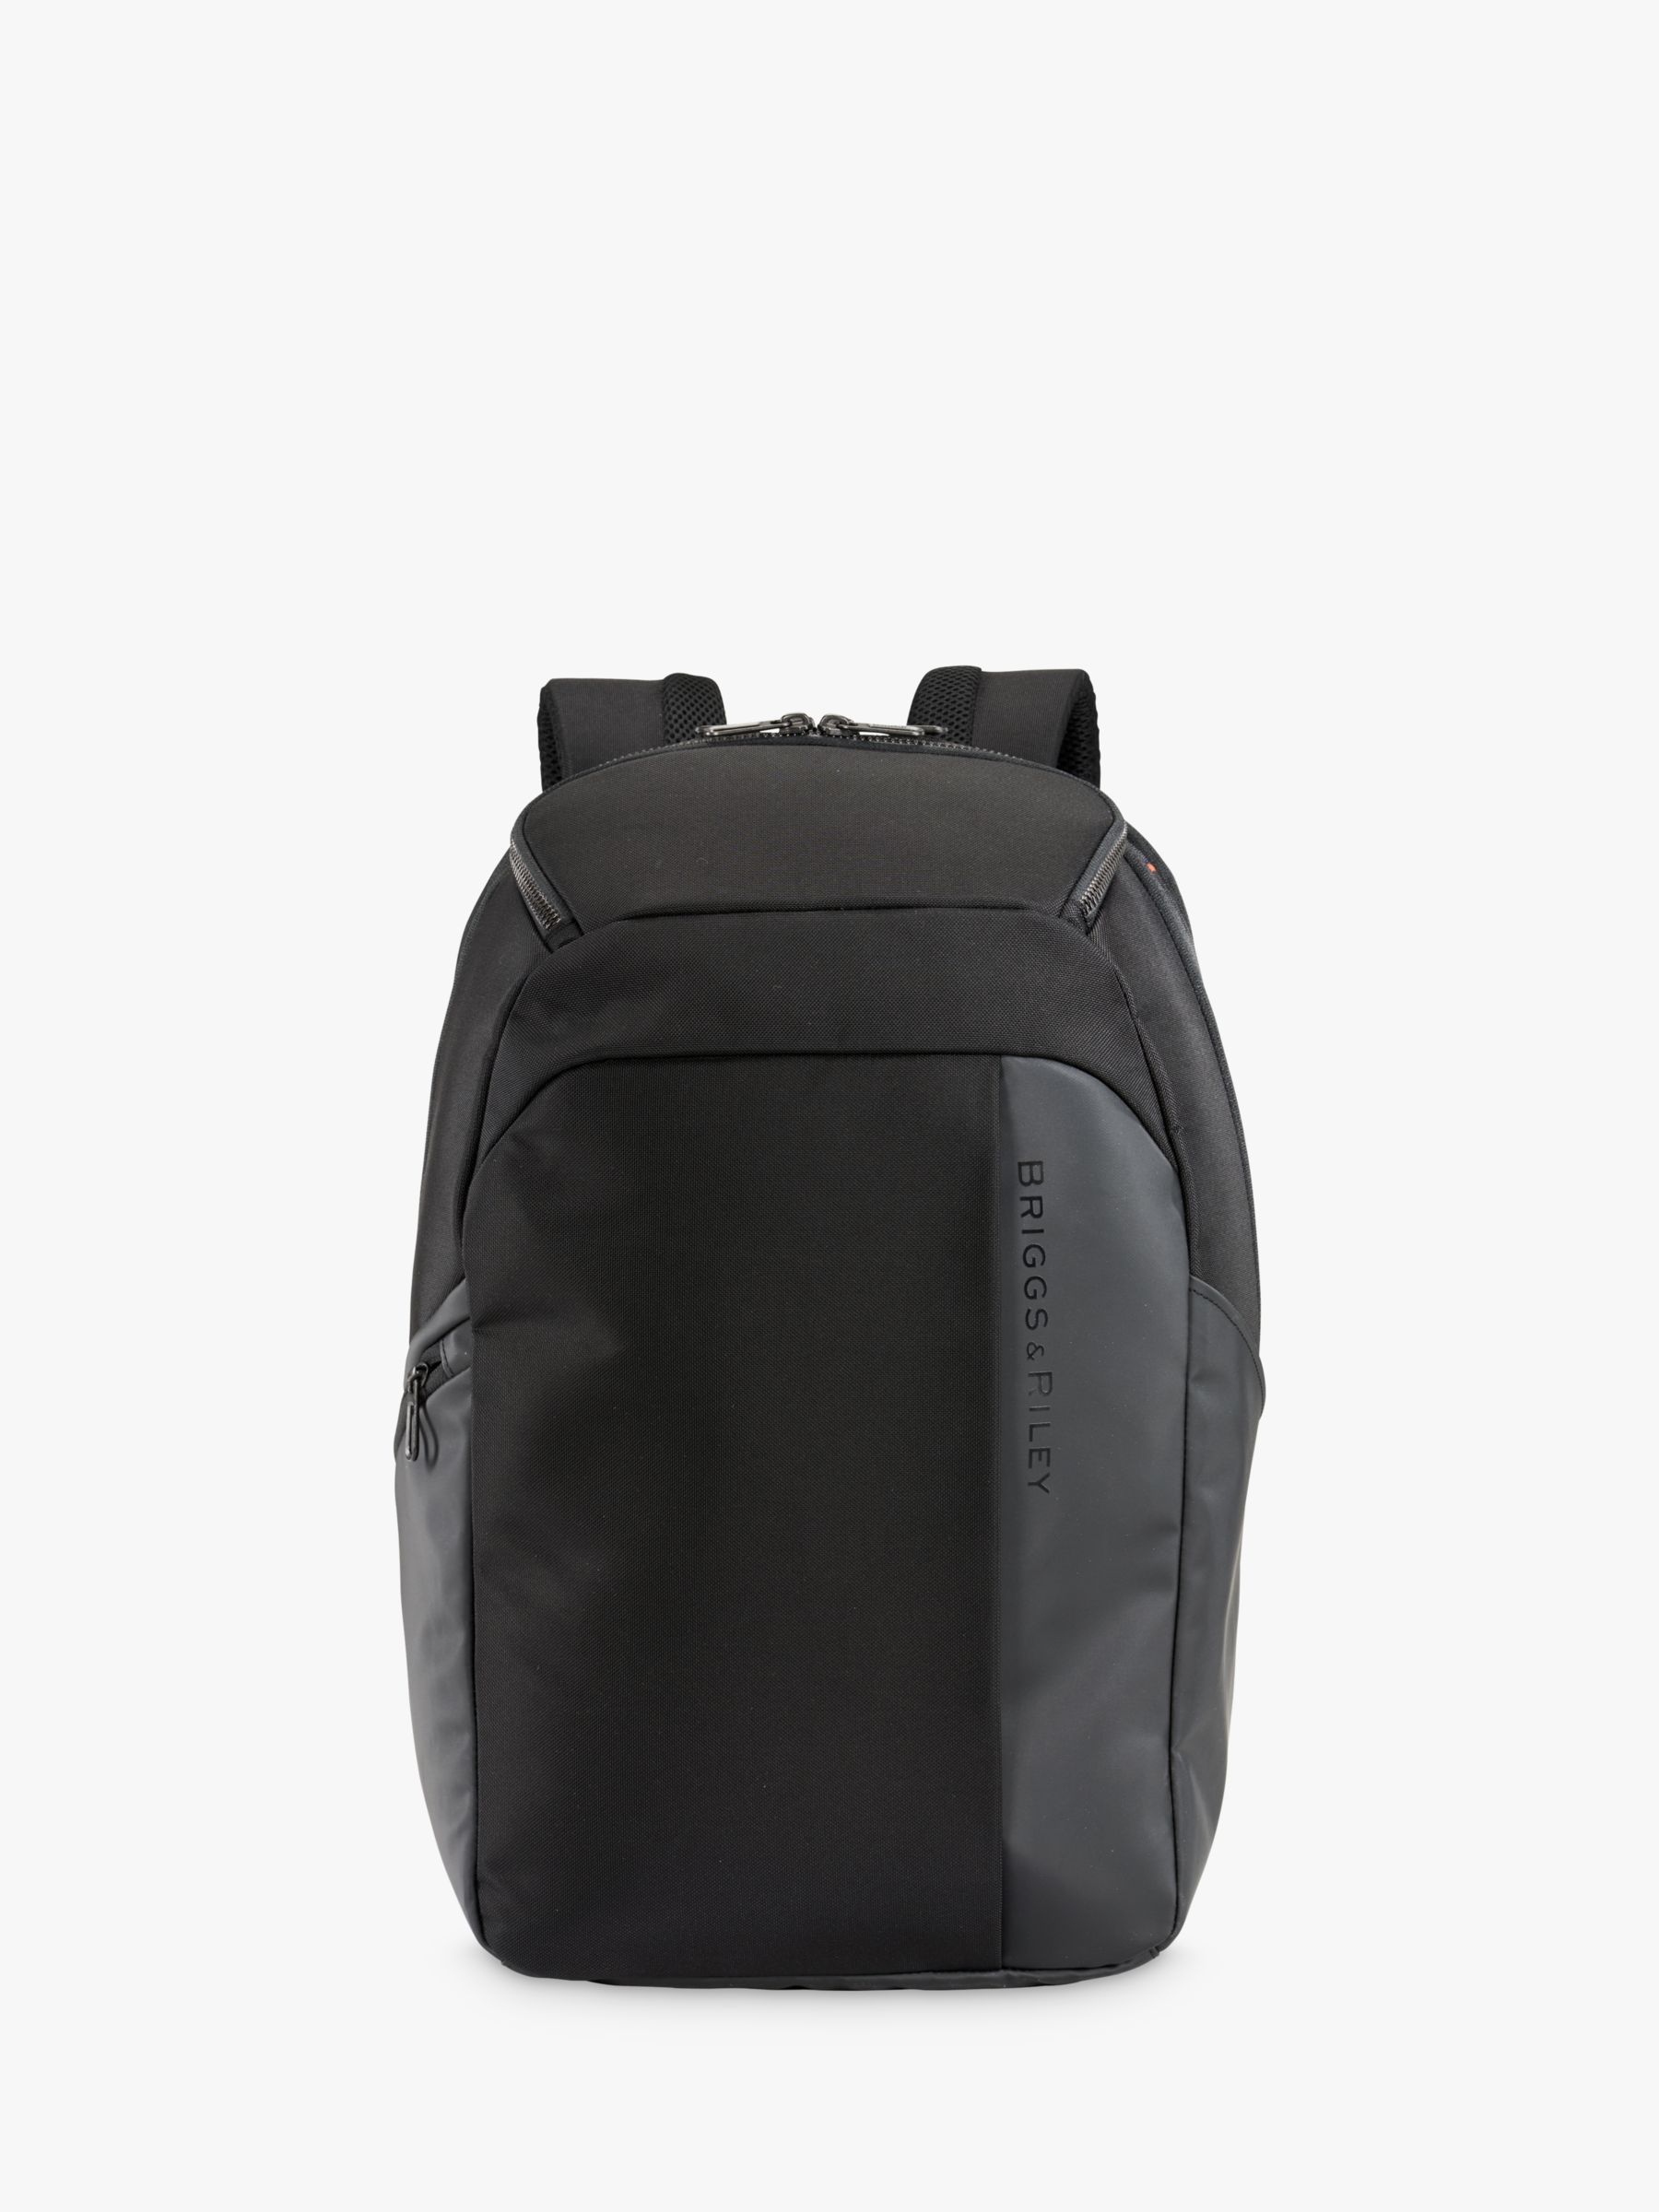 Briggs & Riley ZDX Cargo Backpack, Black